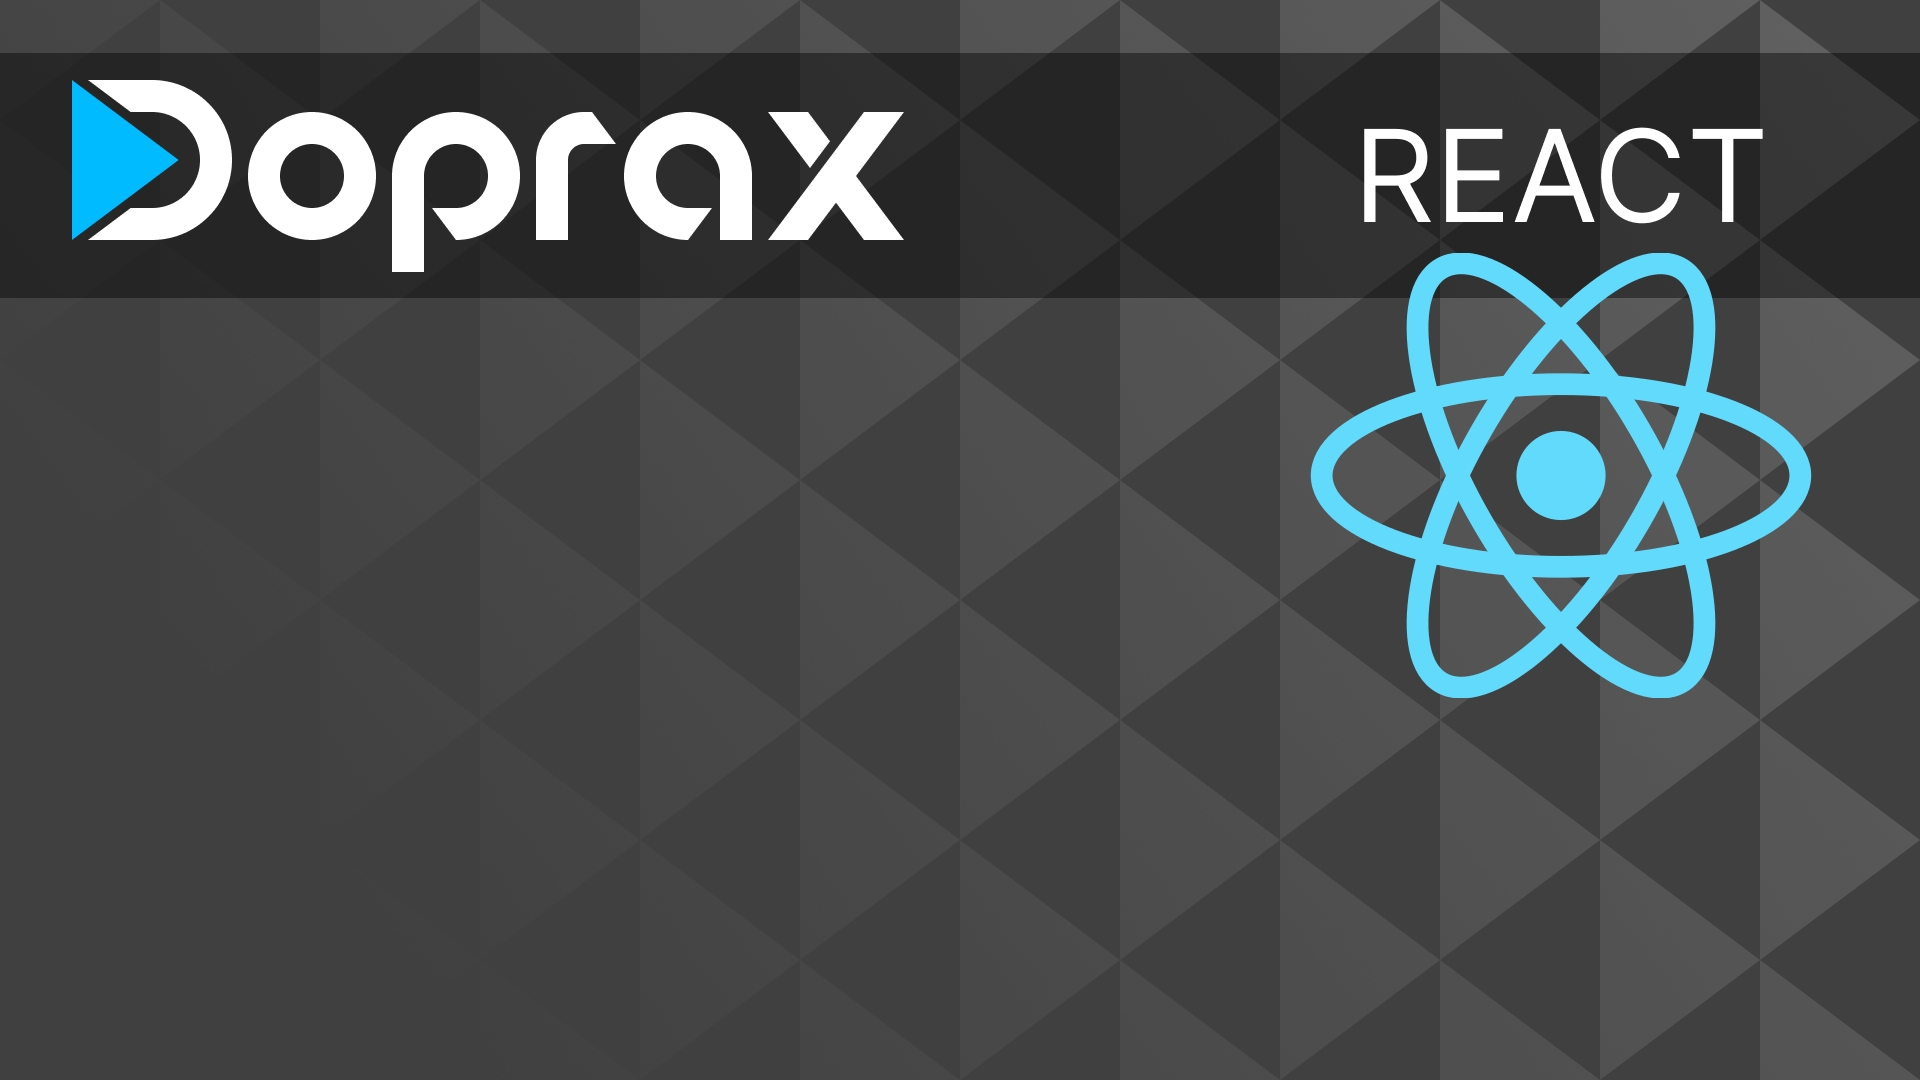 How to Deploy a Dockerized React App to Doprax